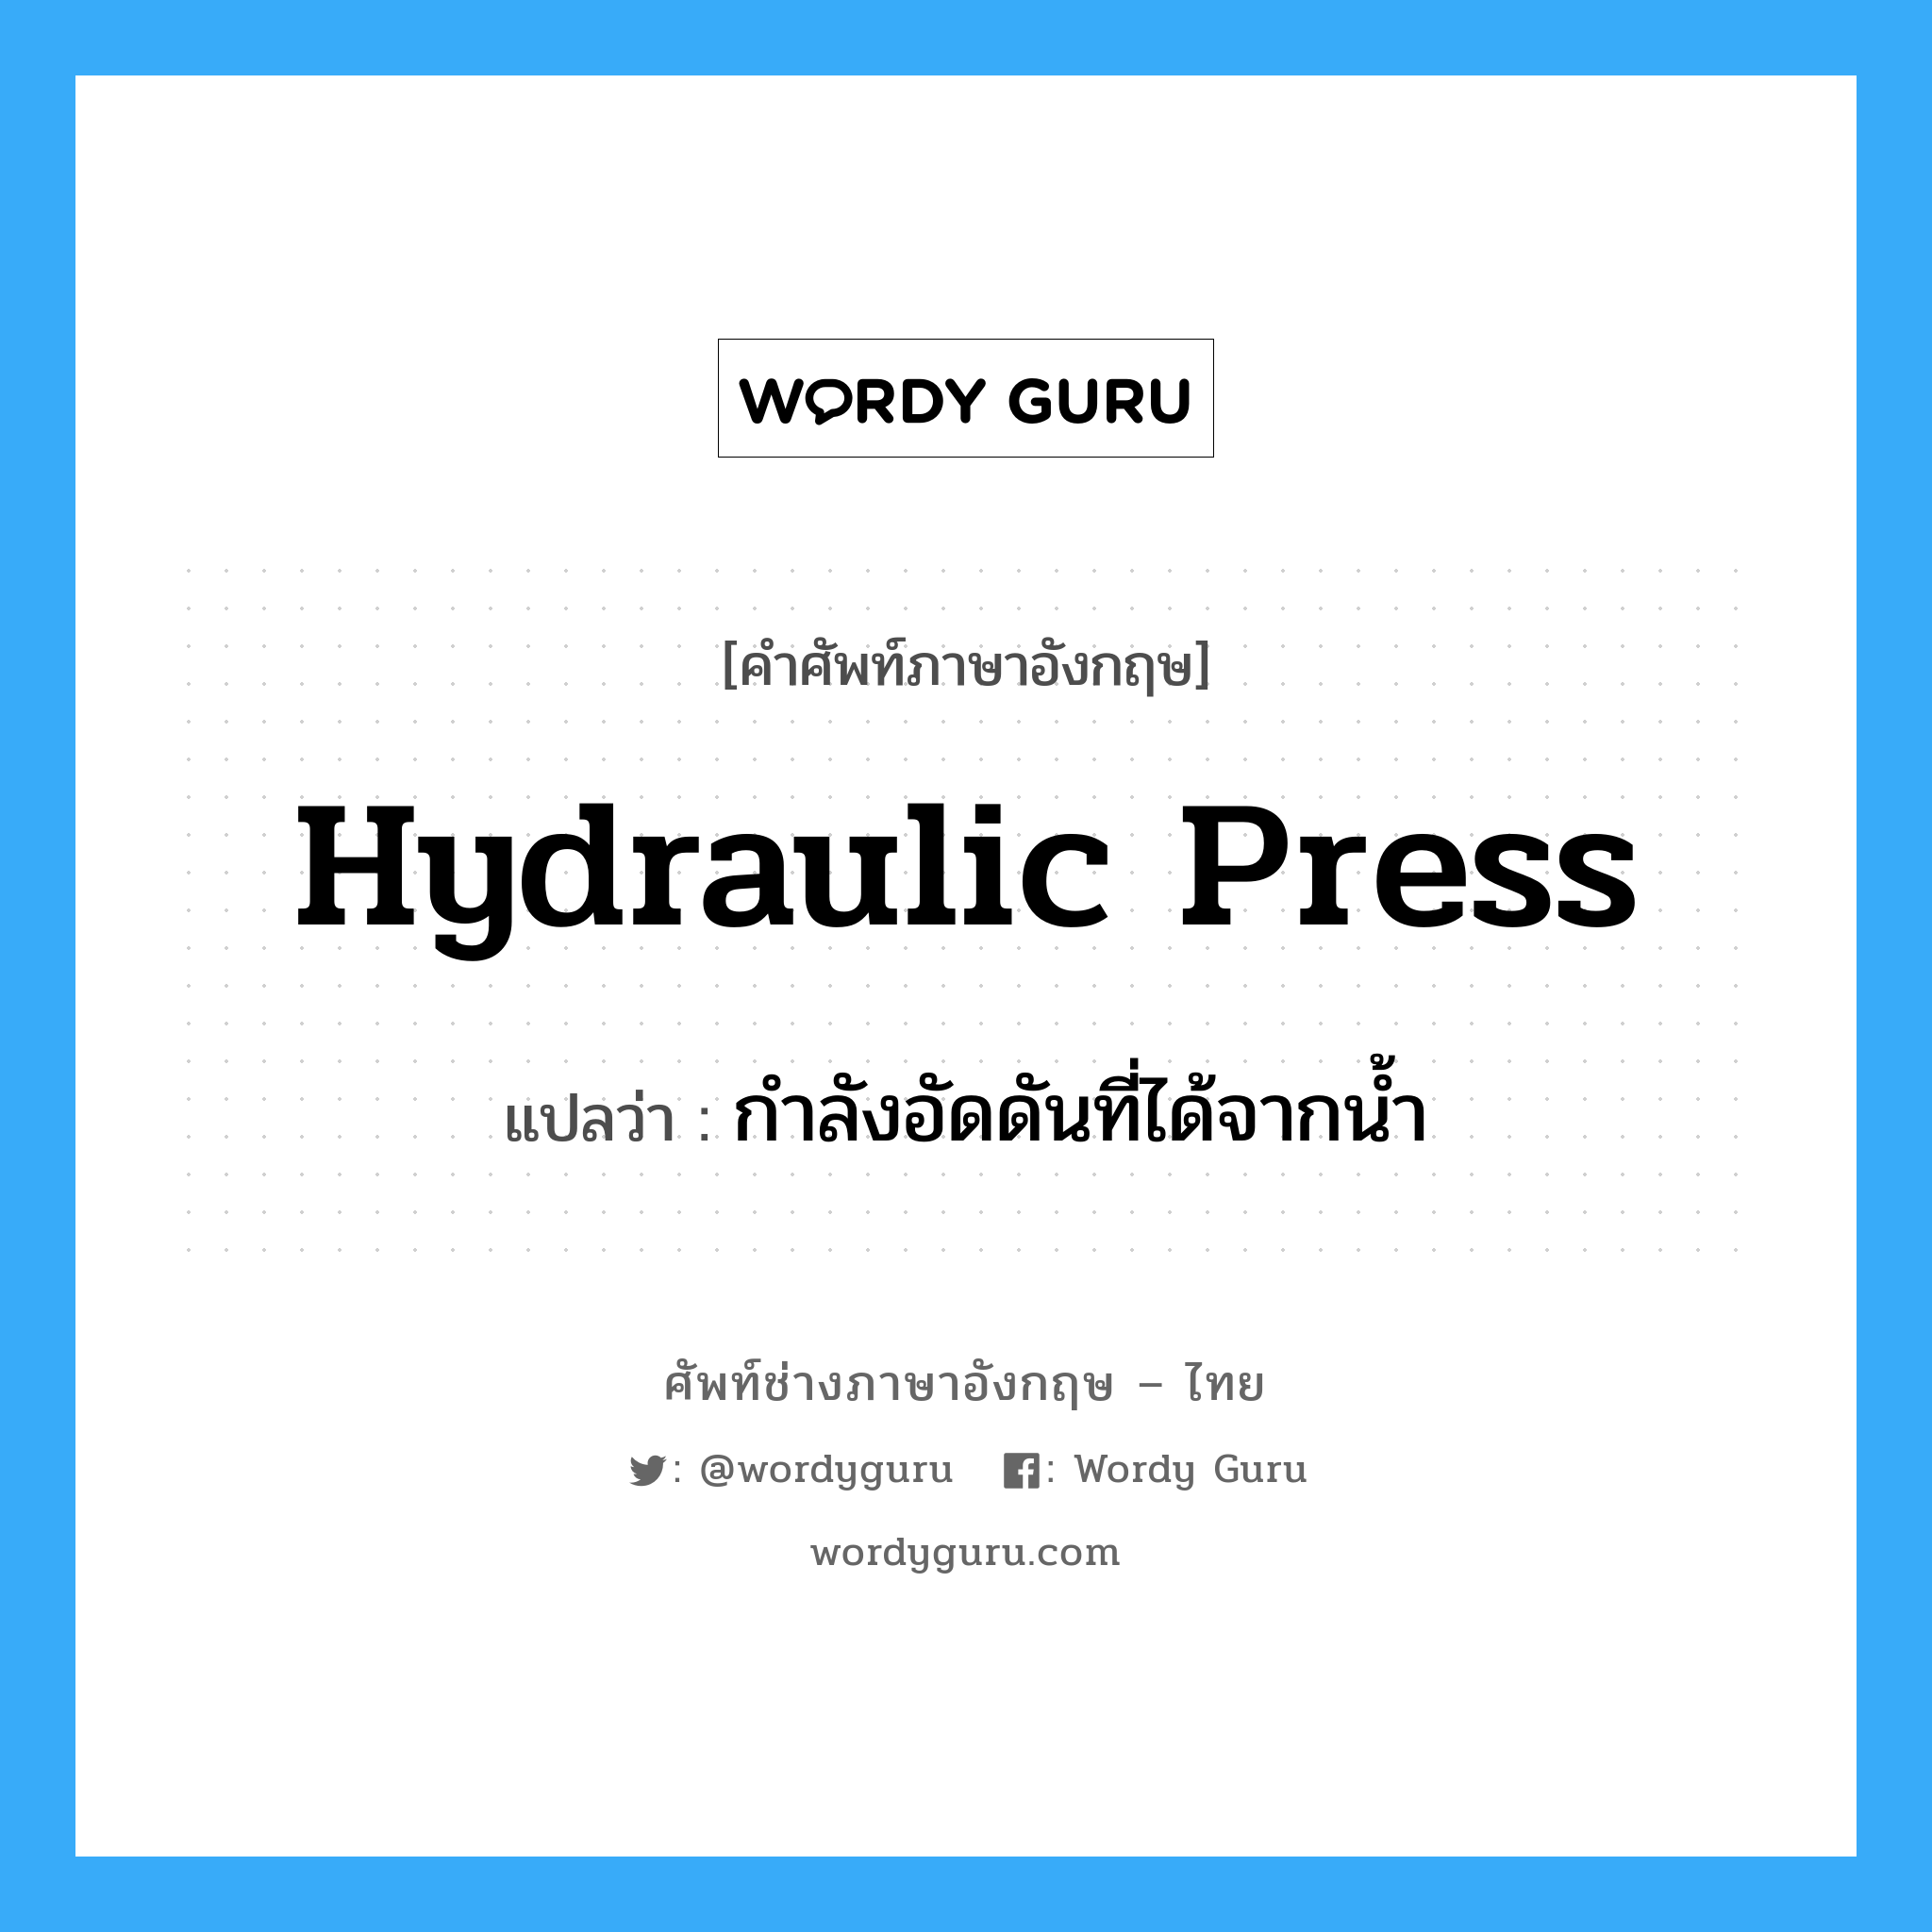 กำลังอัดดันที่ได้จากน้ำ ภาษาอังกฤษ?, คำศัพท์ช่างภาษาอังกฤษ - ไทย กำลังอัดดันที่ได้จากน้ำ คำศัพท์ภาษาอังกฤษ กำลังอัดดันที่ได้จากน้ำ แปลว่า hydraulic press